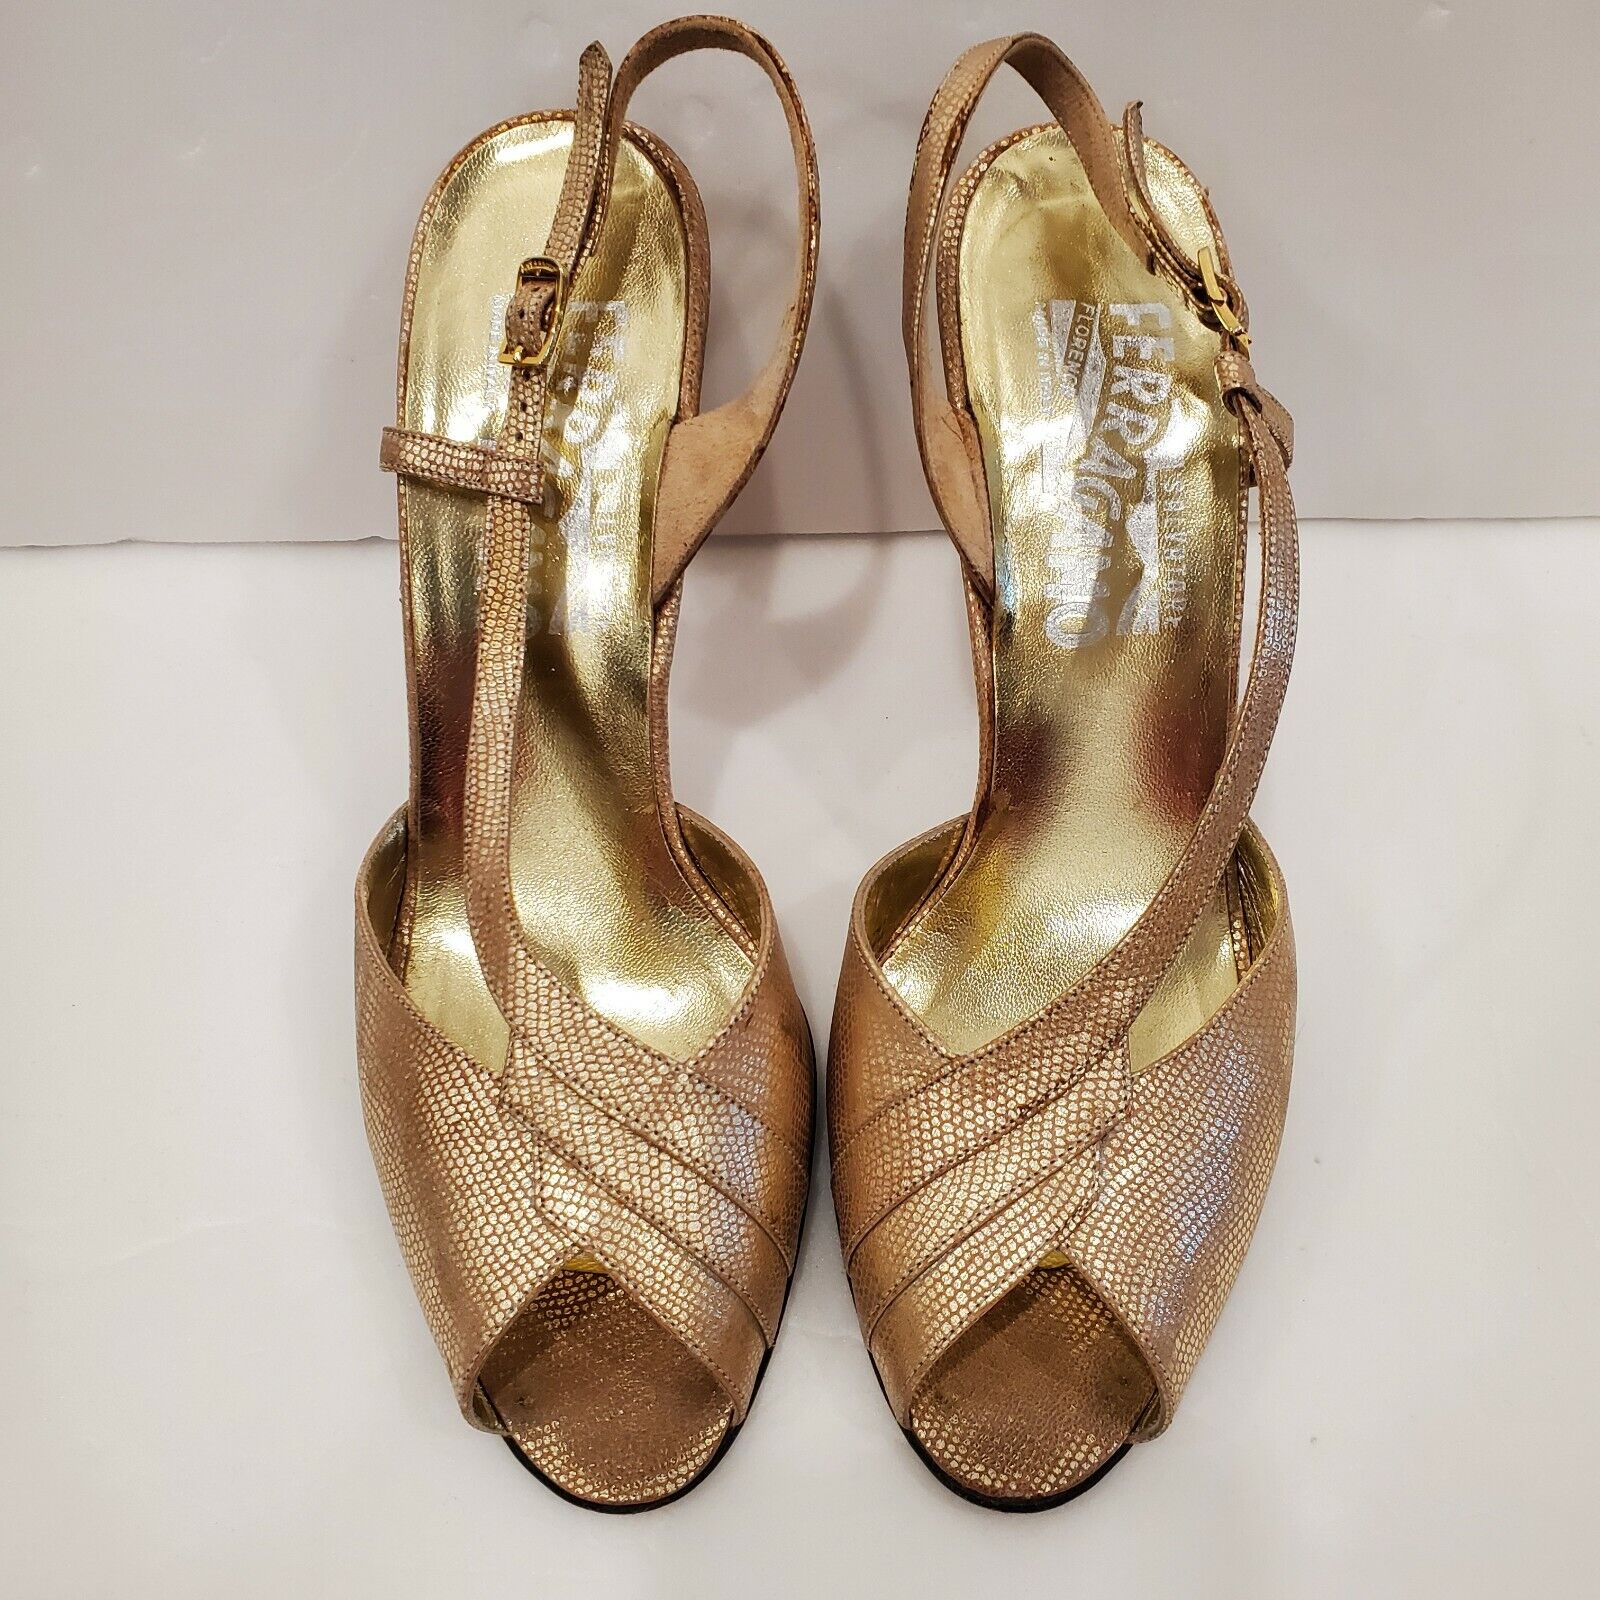 Salvatore Ferragamo Gold Sandals Size 7 AA | eBay